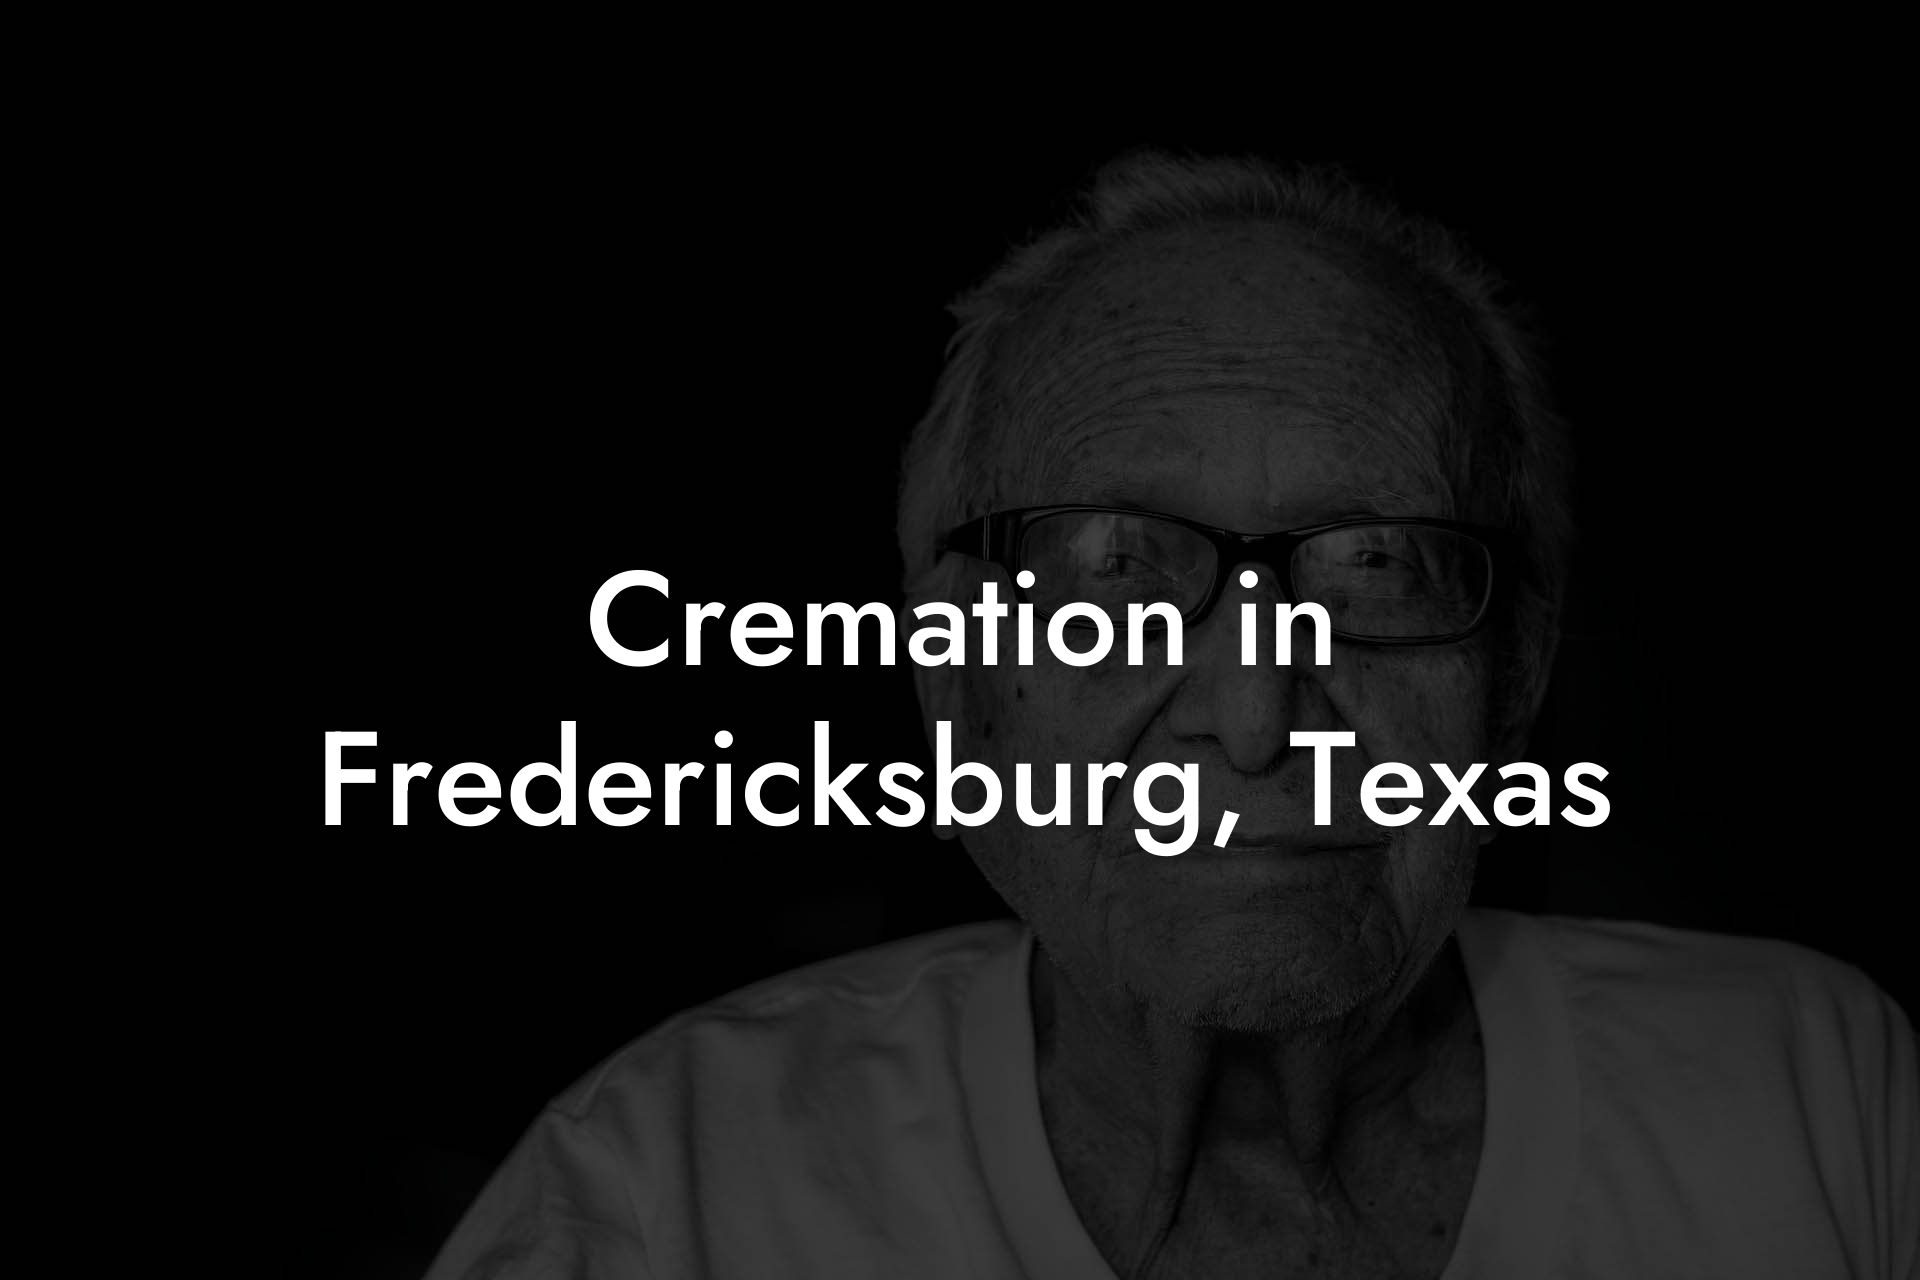 Cremation in Fredericksburg, Texas